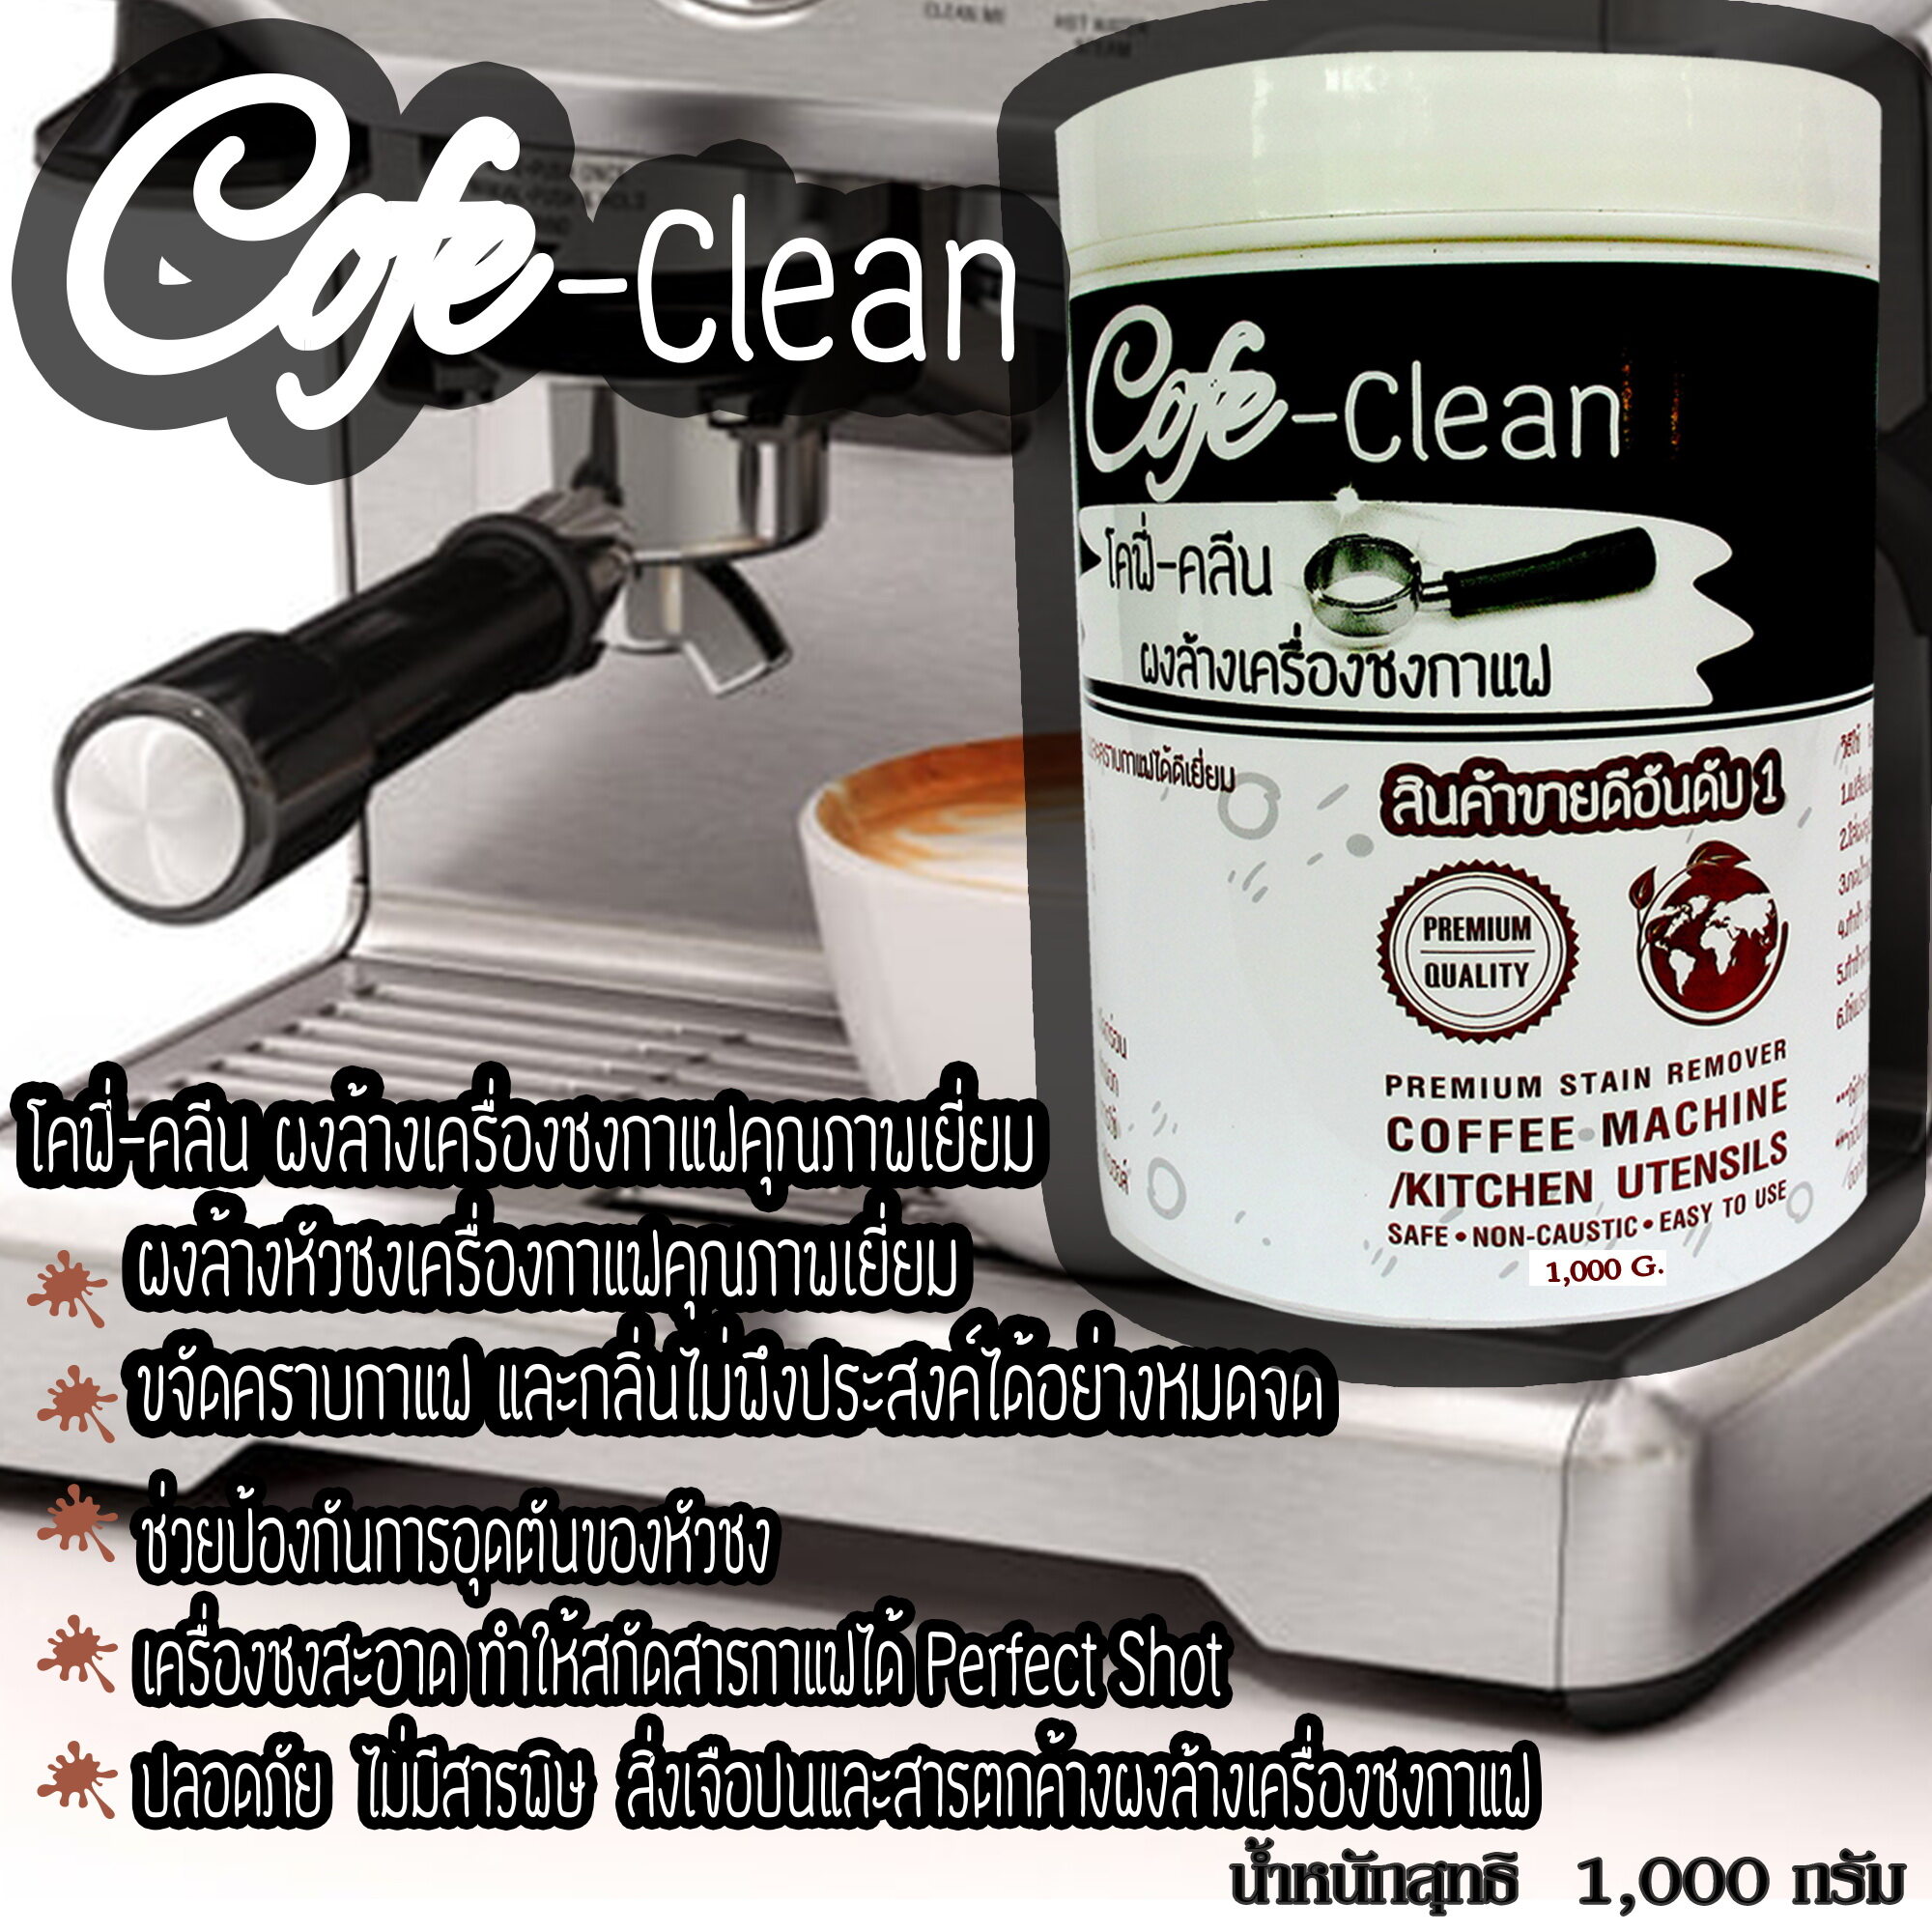 ผงล้างหัวชงCofe Cleanผงล้างเครื่องกาแฟ  ผงล้างหัวกรุ๊ป ขนาด1000กรัม ผงล้างเครื่องชงกาแฟ ผงล้างทำความสะอาดคราบกาแฟ คราบตะกรันในหัวชงกาแฟ